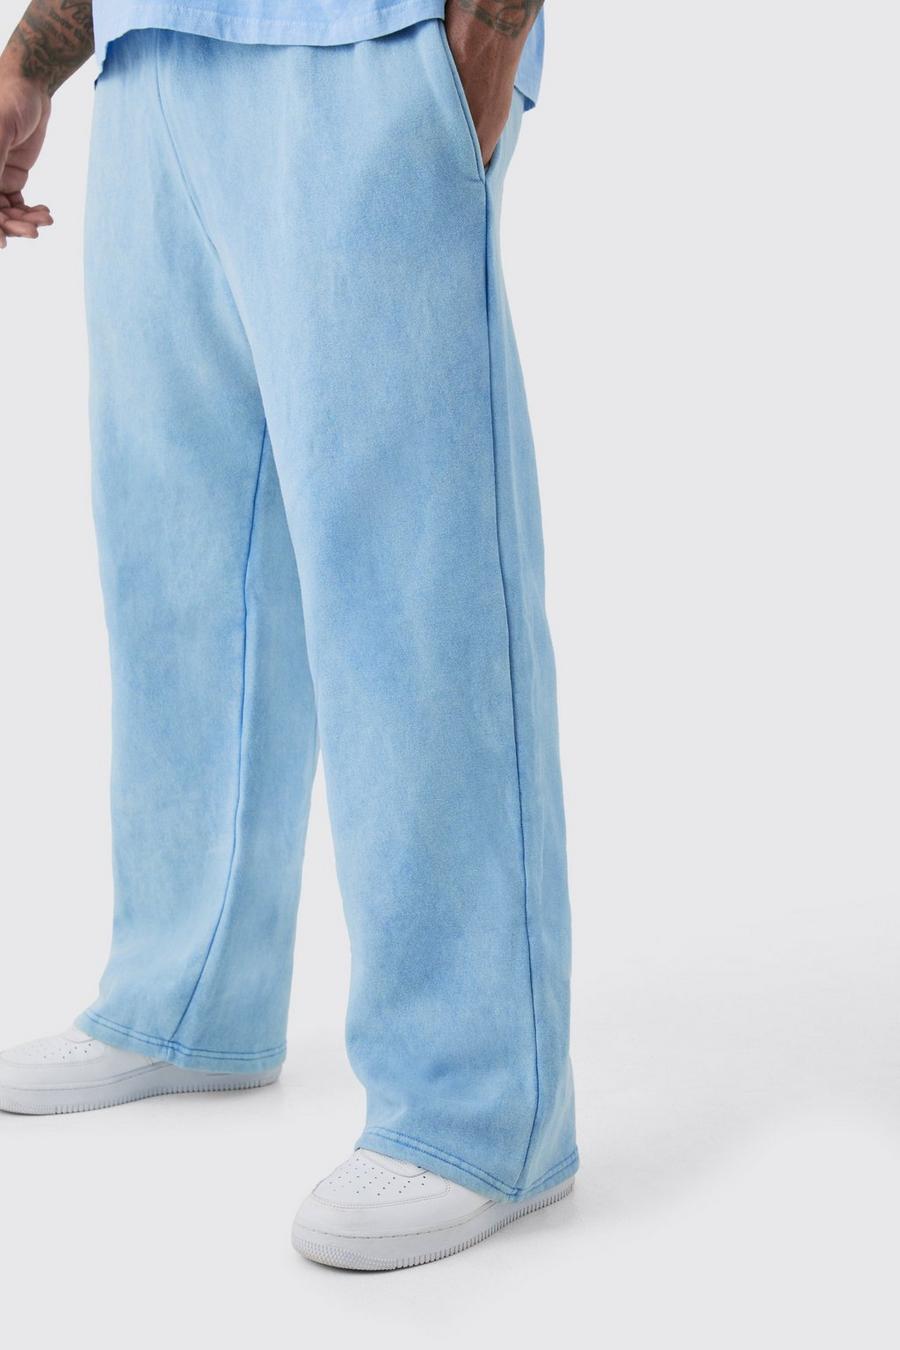 Pantaloni tuta Plus Size rilassati in lavaggio riciclato, Cornflower blue